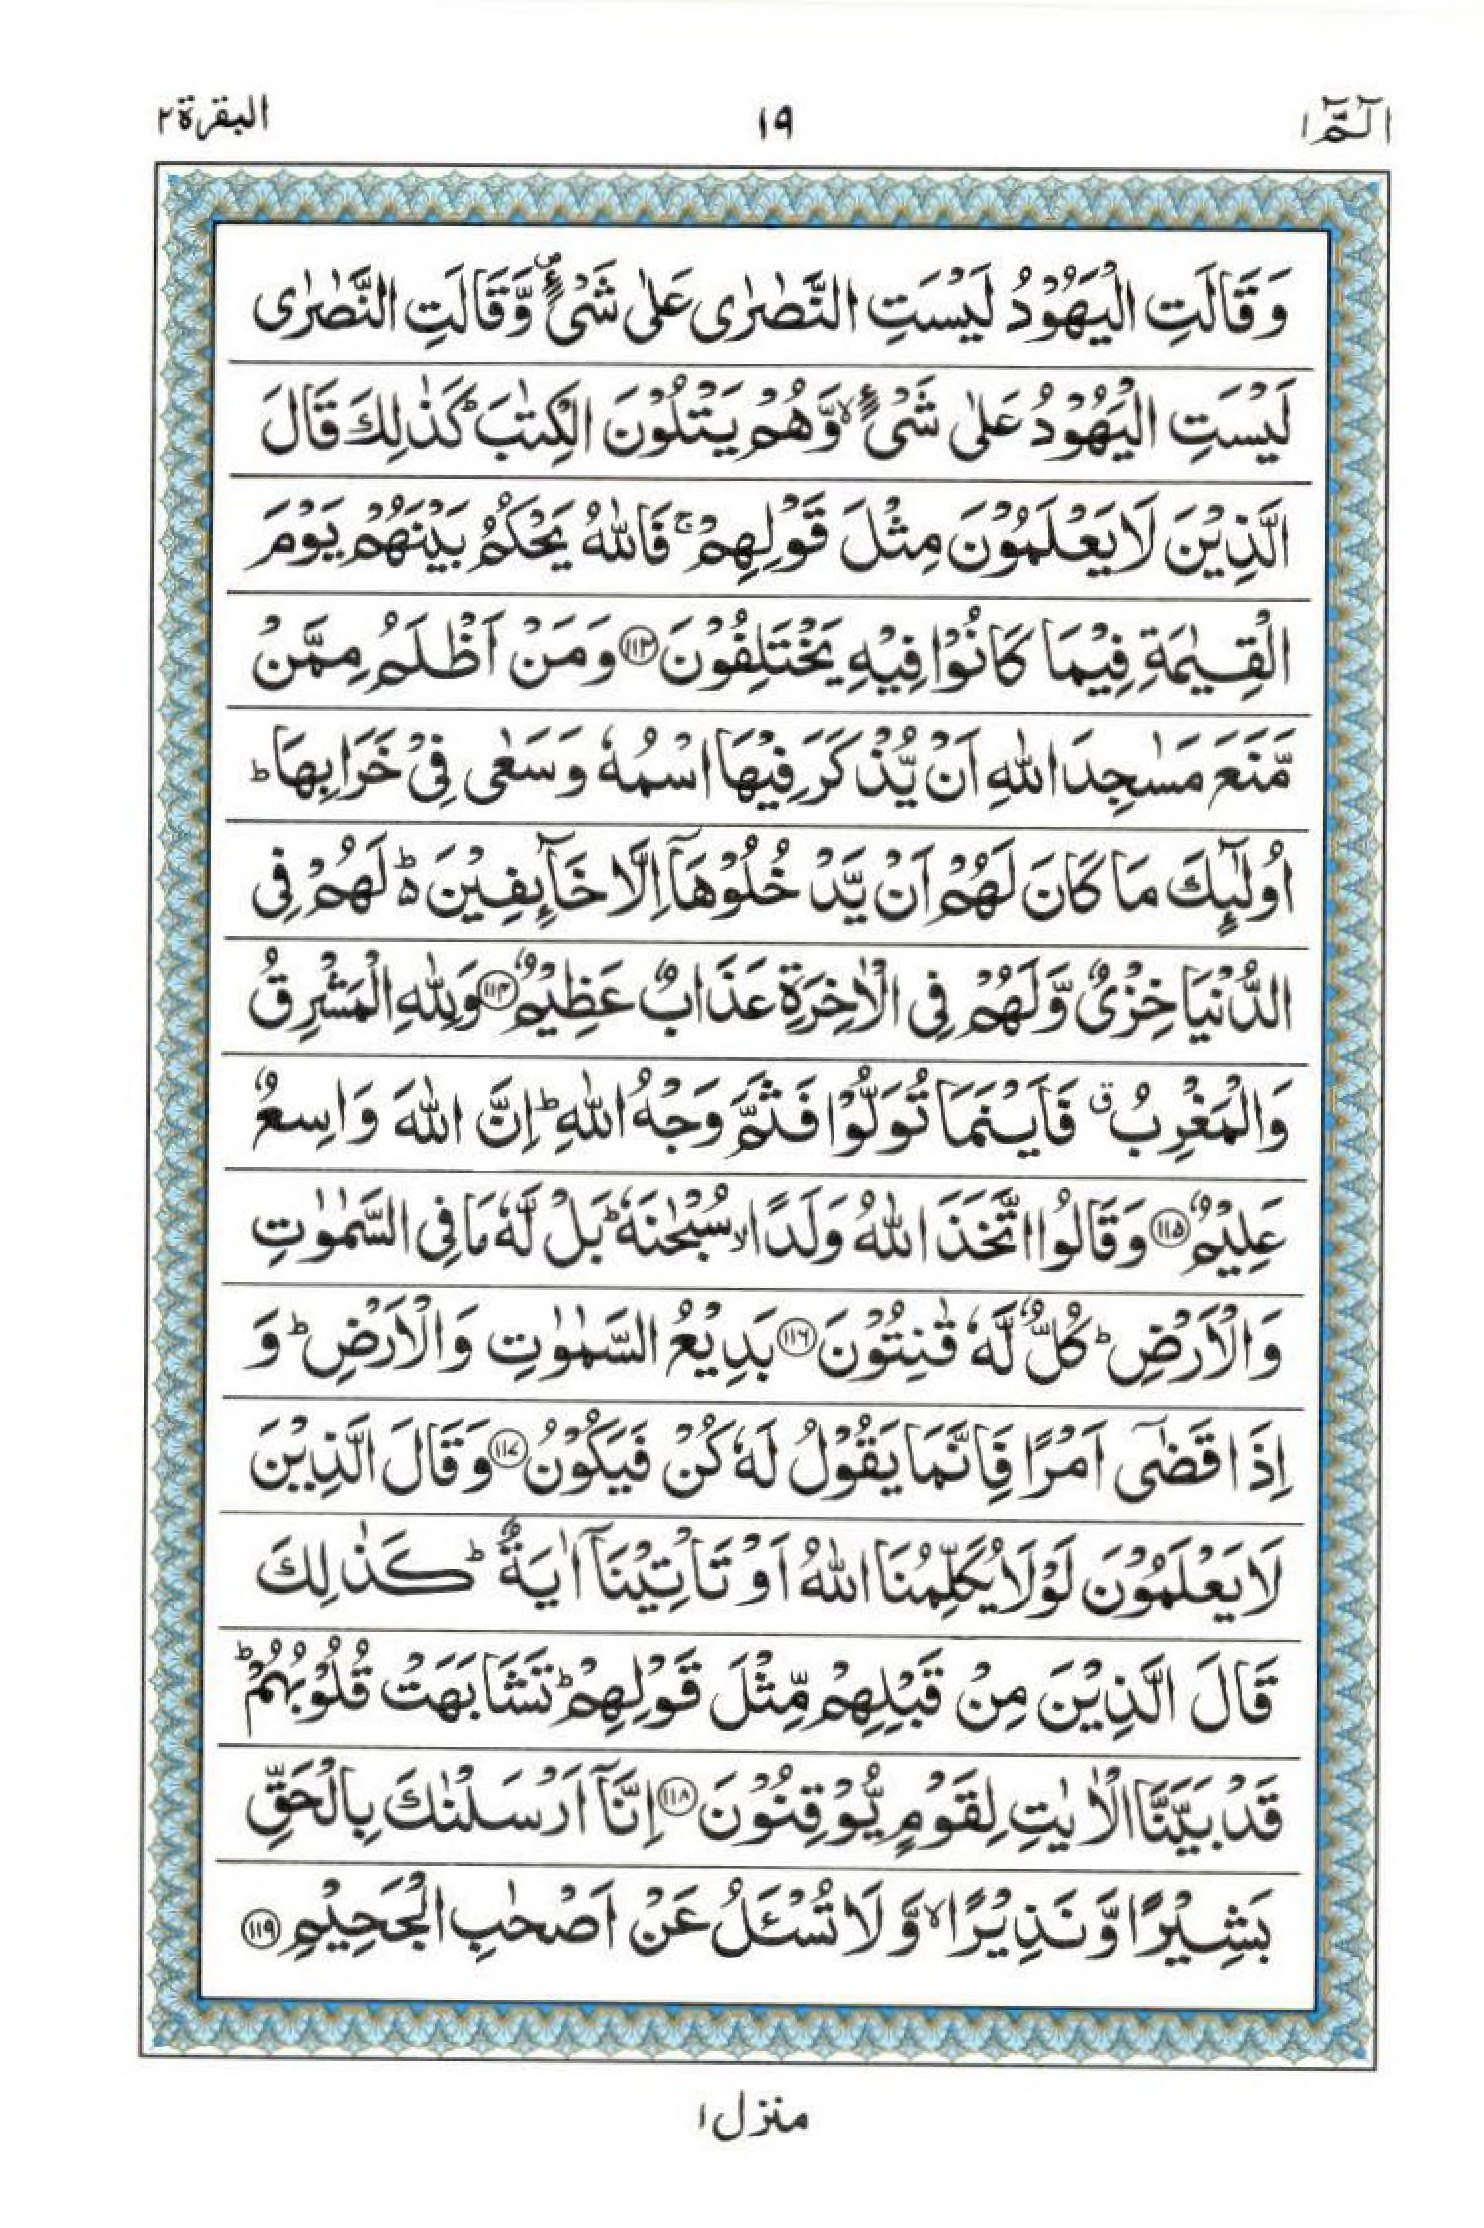 Read 15 Lines Al Quran Part 1 Page No 19, Practice Quran